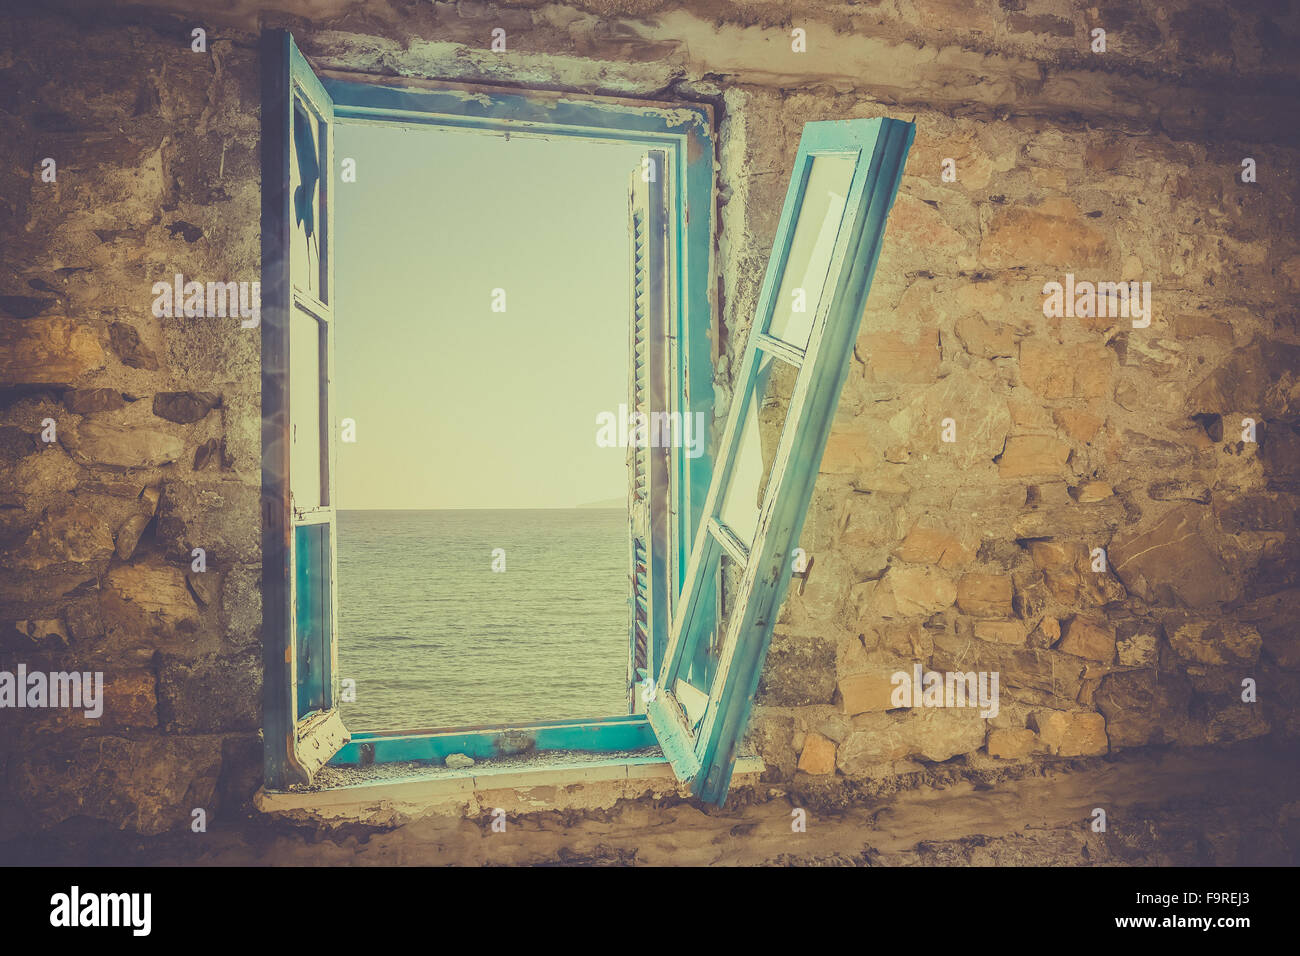 Vieille fenêtre cassée avec vue sur mer Banque D'Images